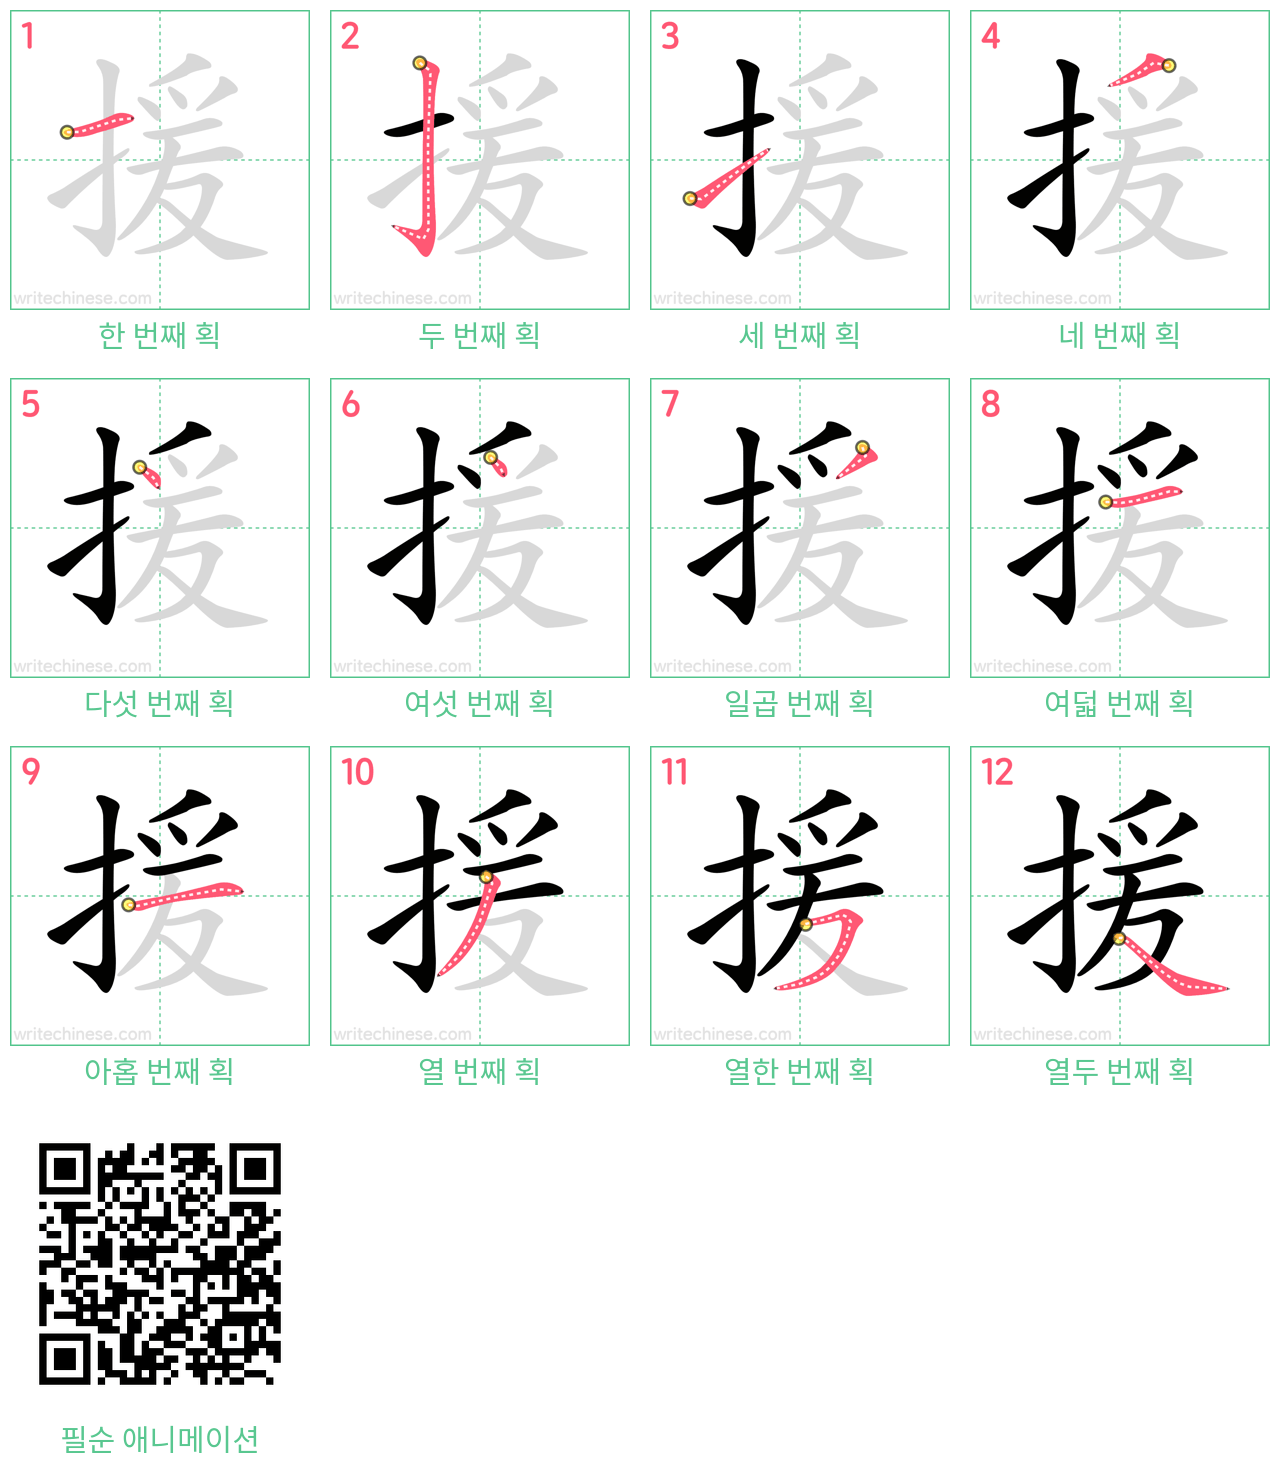 援 step-by-step stroke order diagrams